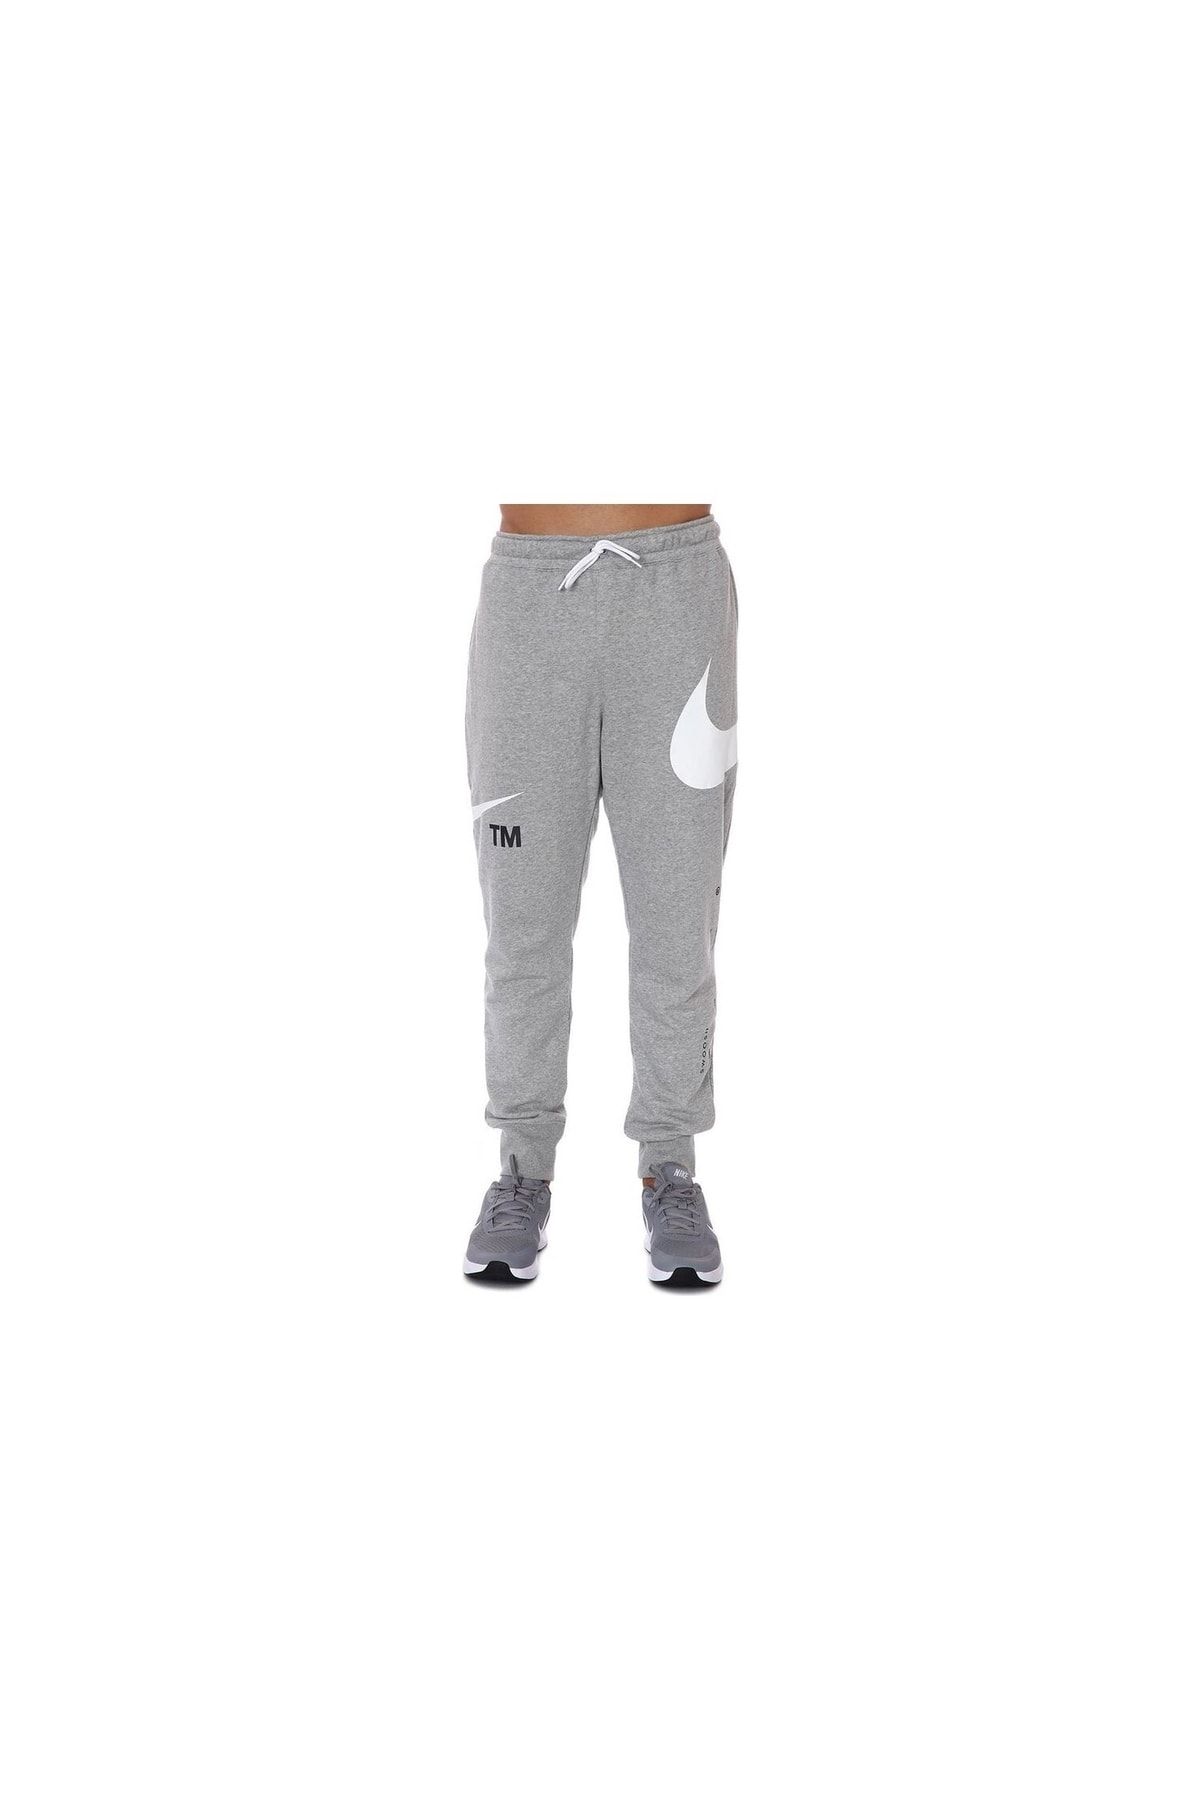 Nike Sweatpants - Brown - Trendyol